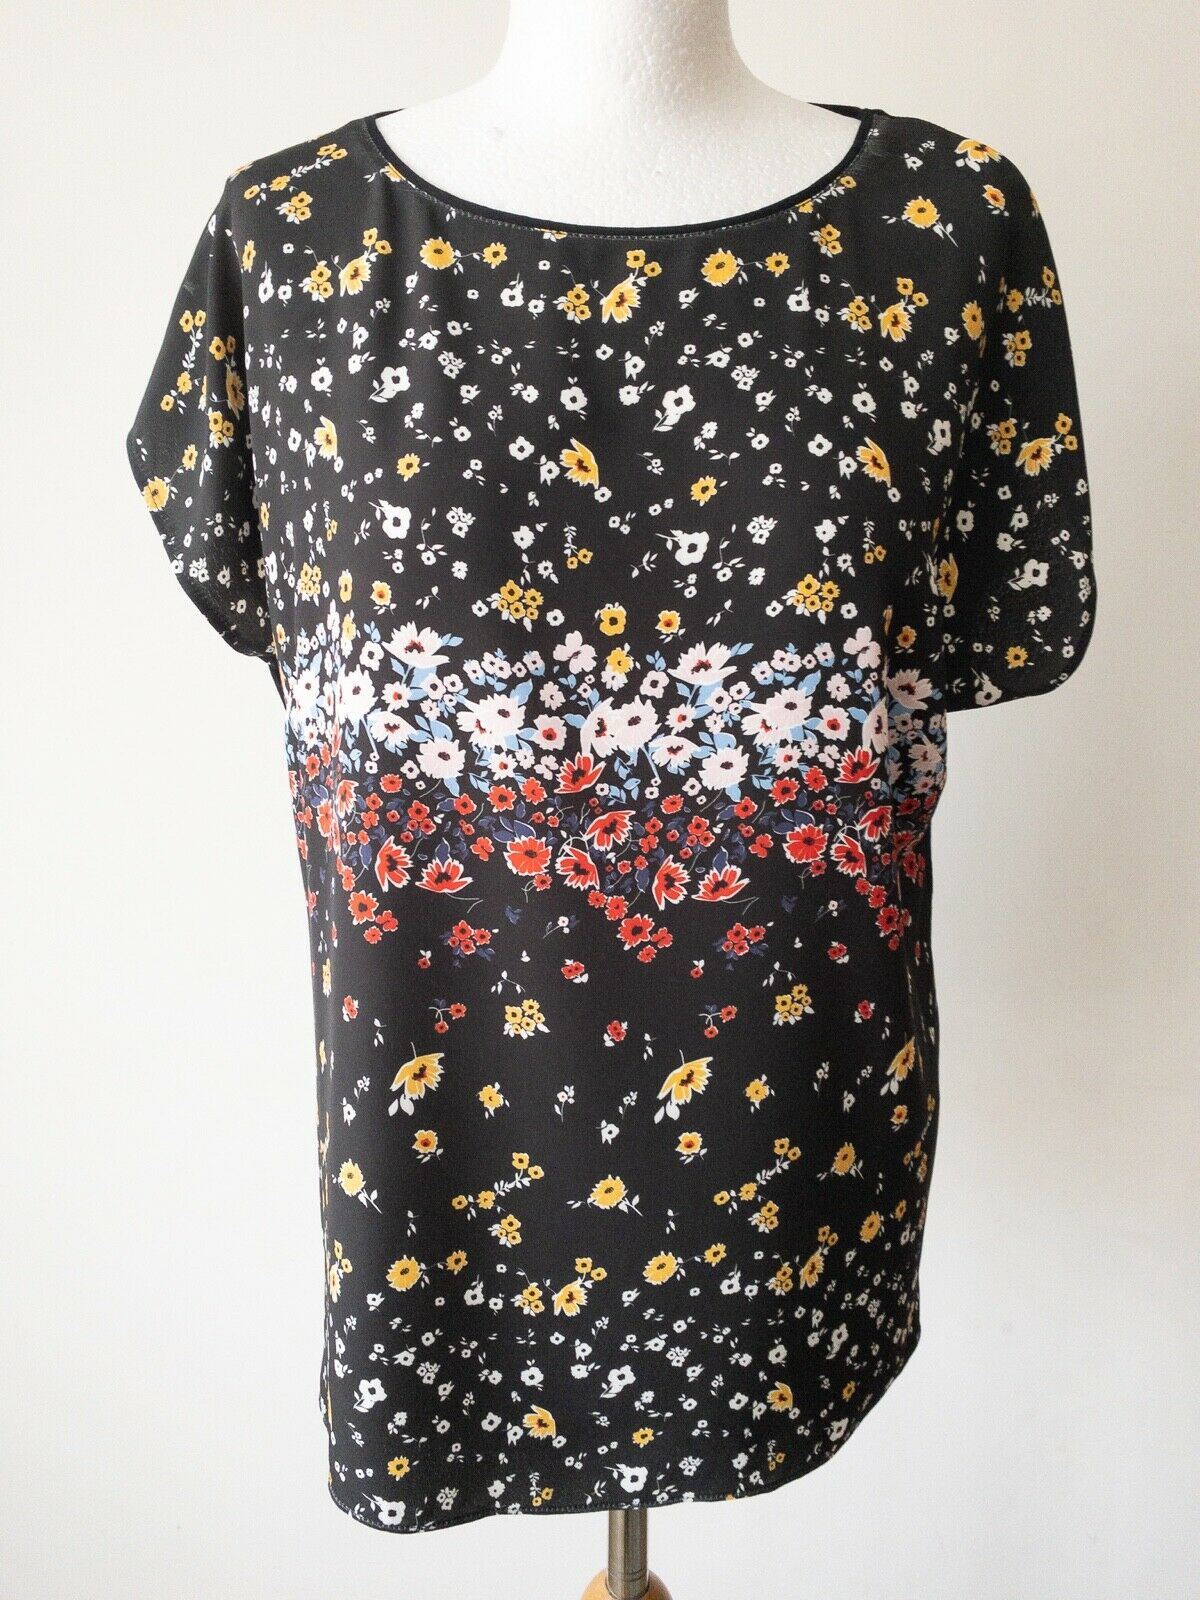 Black Floral Contrast T-Shirt Size 10